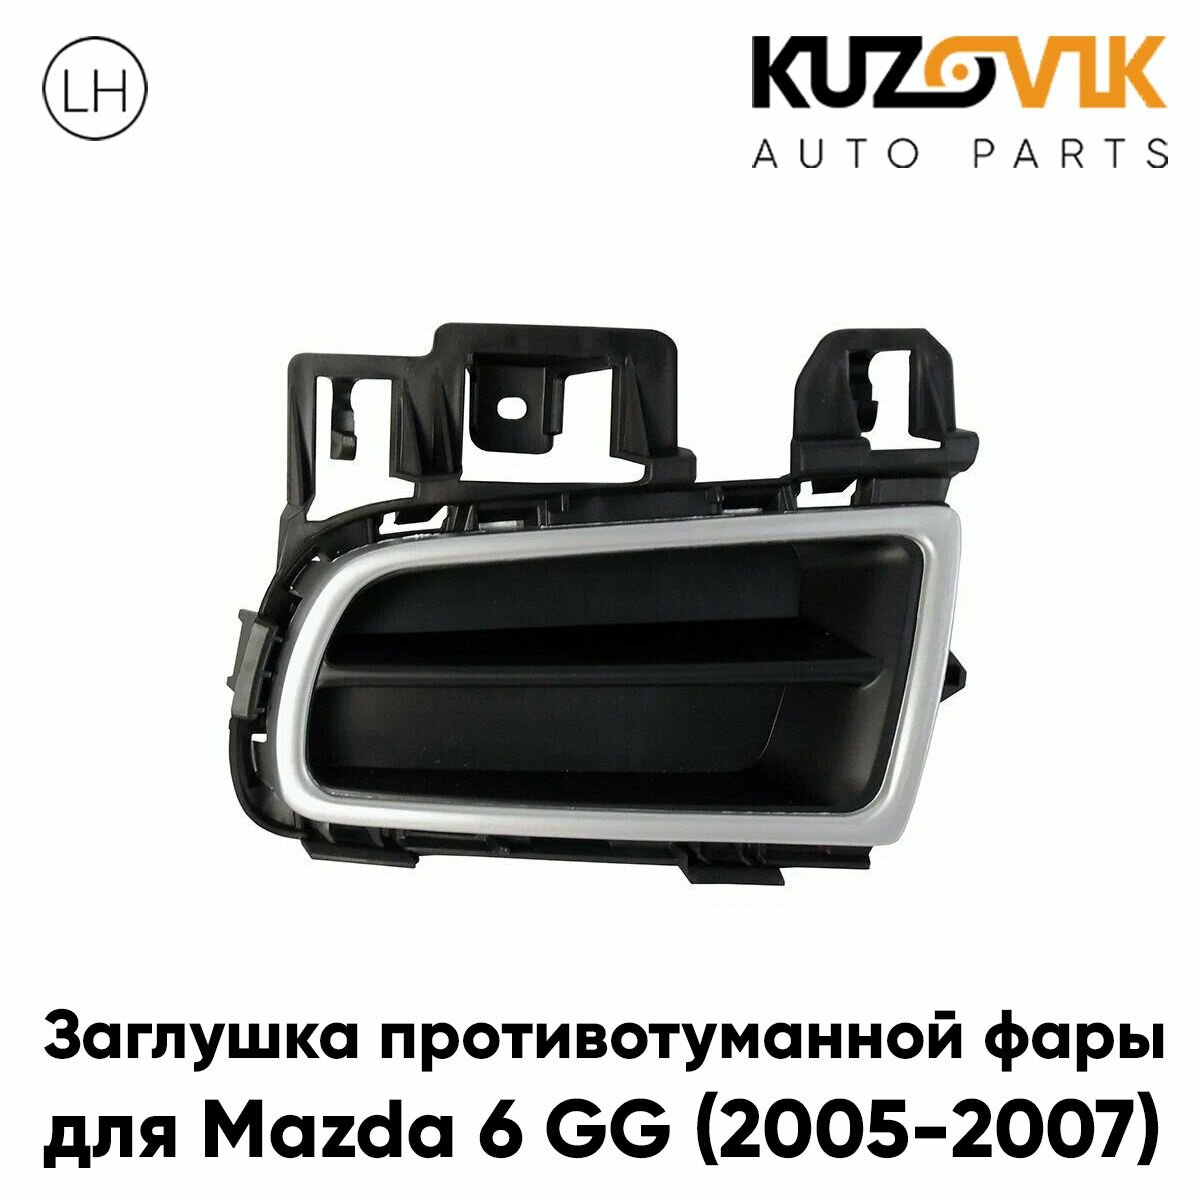 Решетка в передний бампер левая без отверстия под птф Mazda 6 GG (2006-) рестайлинг